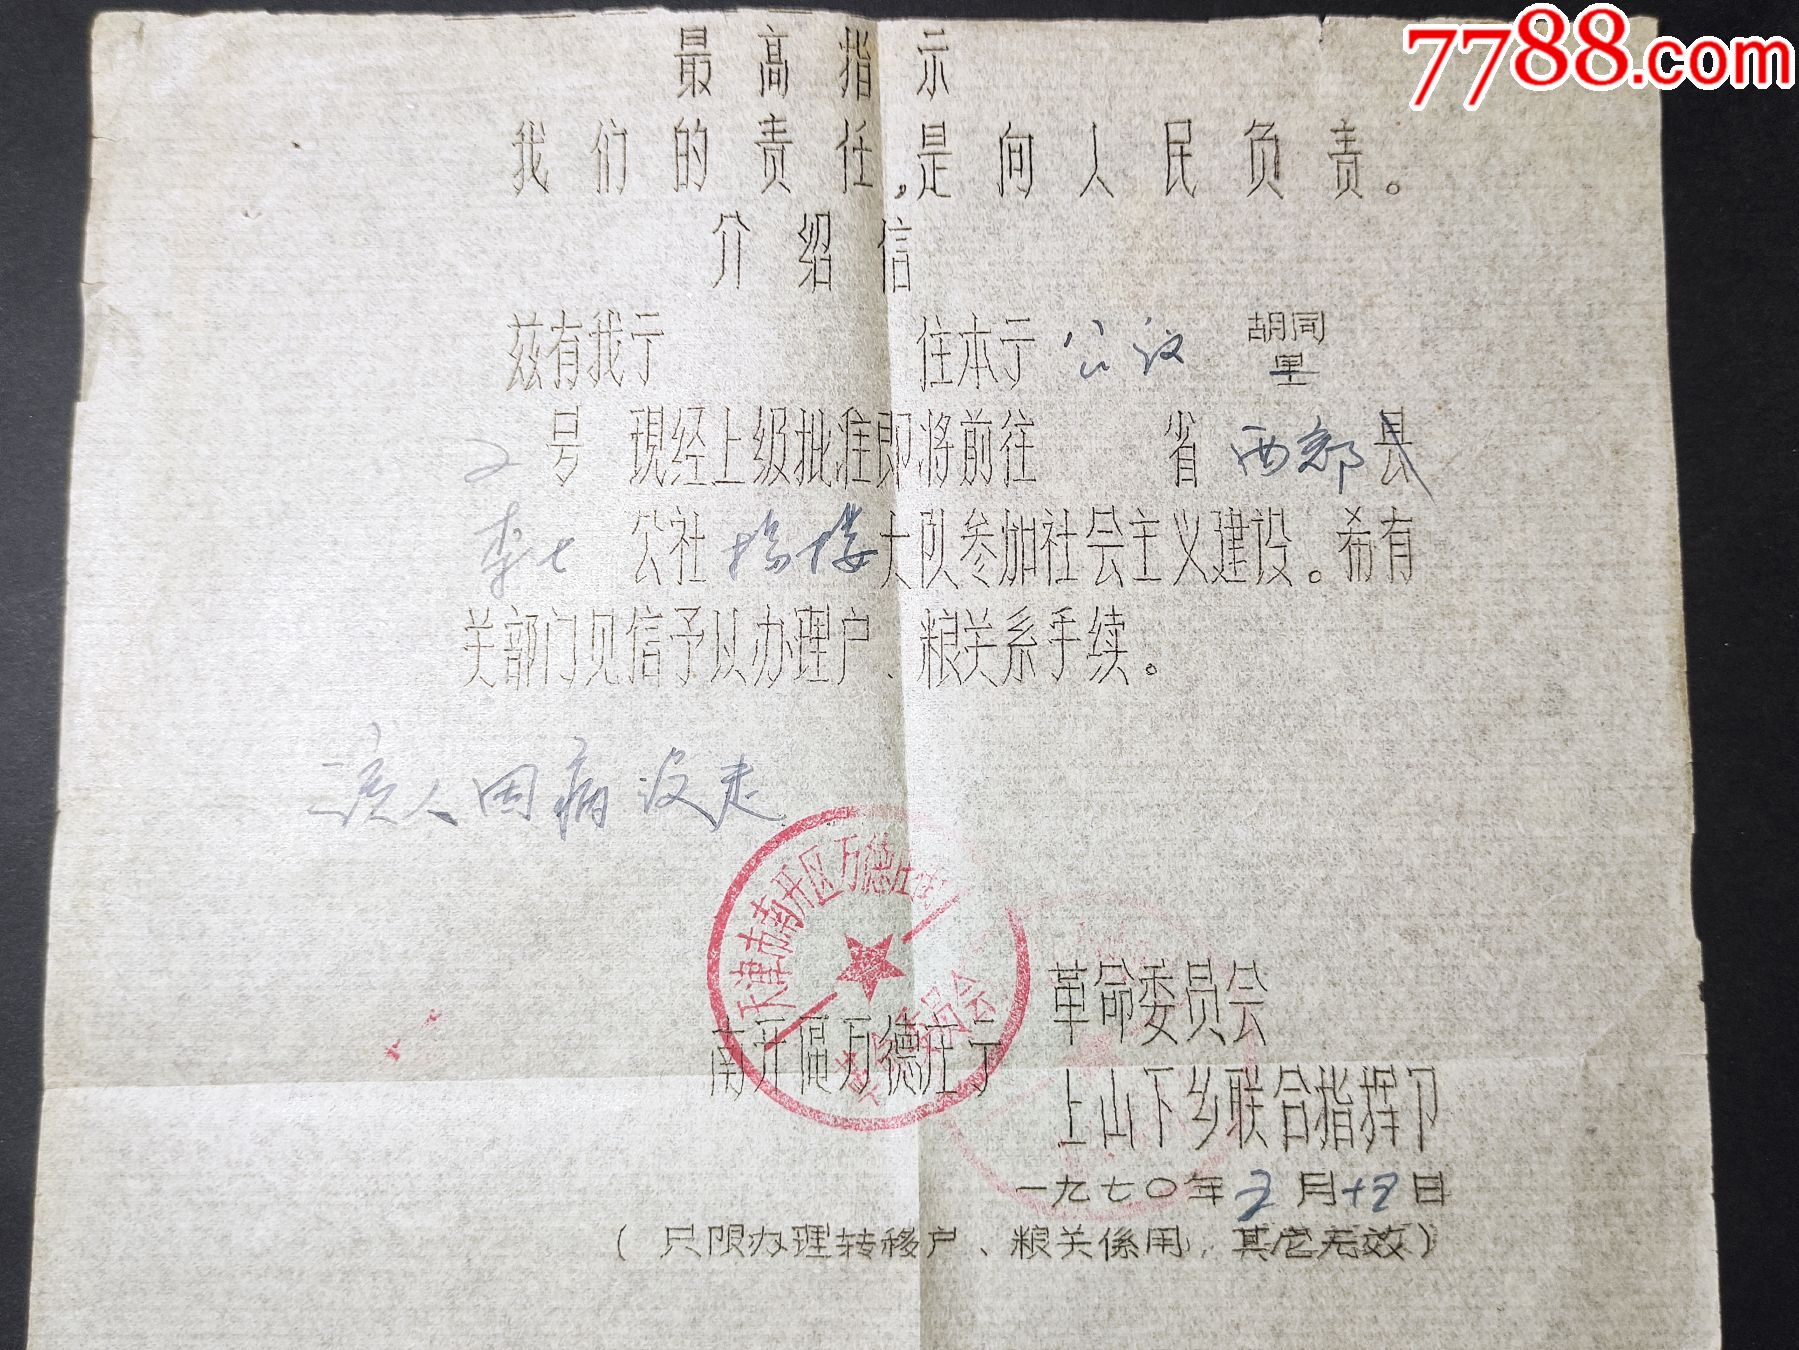 1970年天津南开区上山下乡联合指挥部介绍信办理转移户口粮食关系用